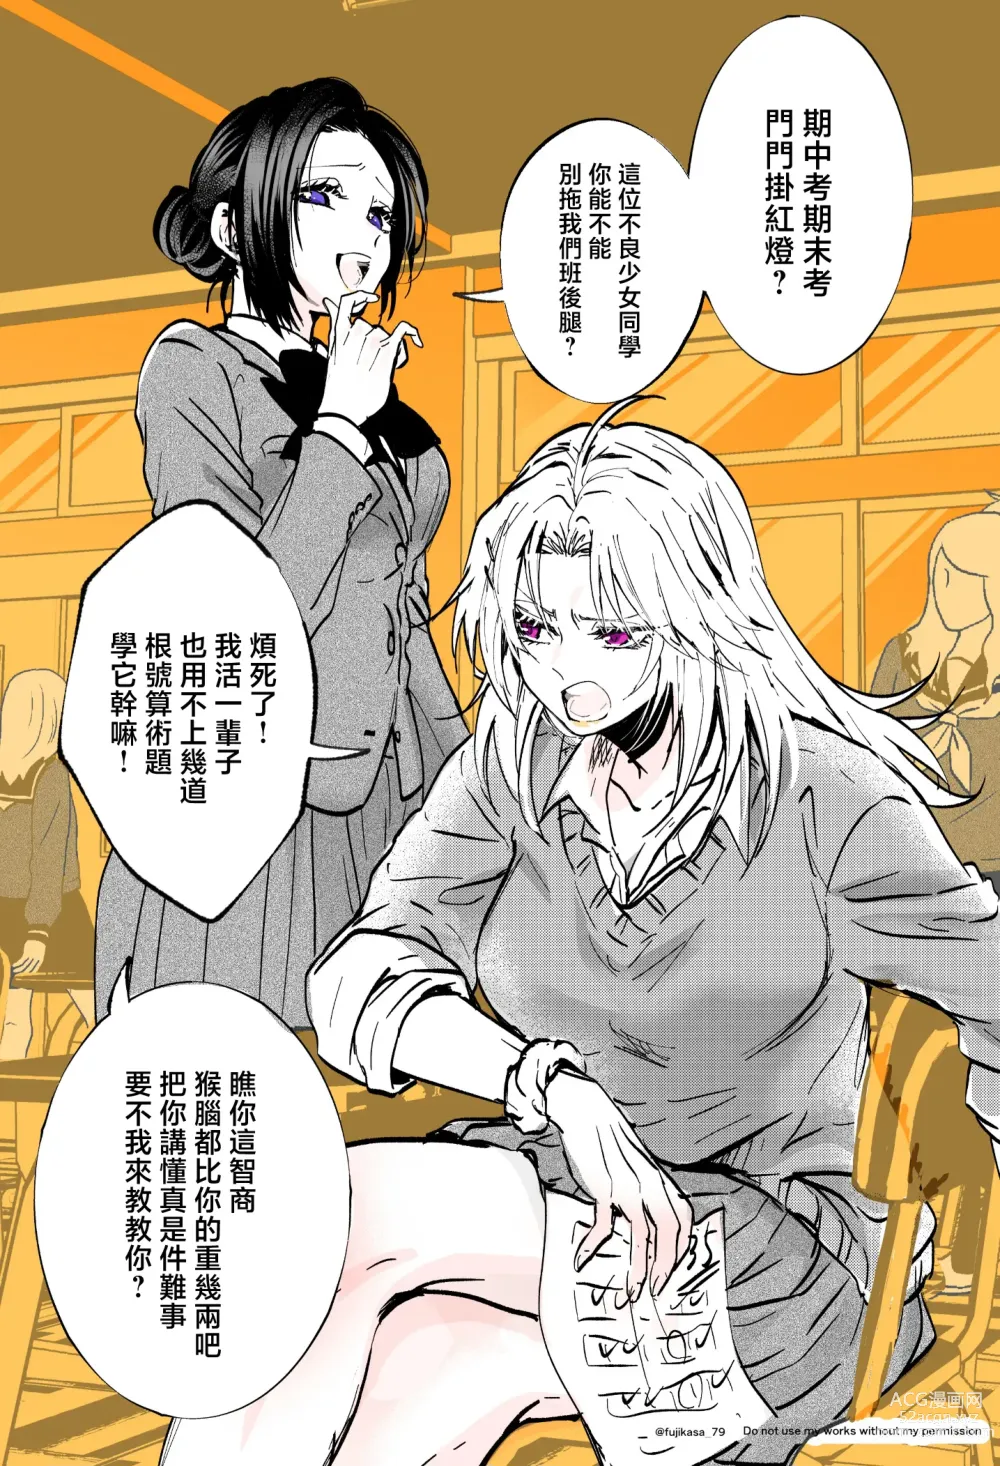 Page 6 of manga 不良少女与委员长关系不好全是演戏